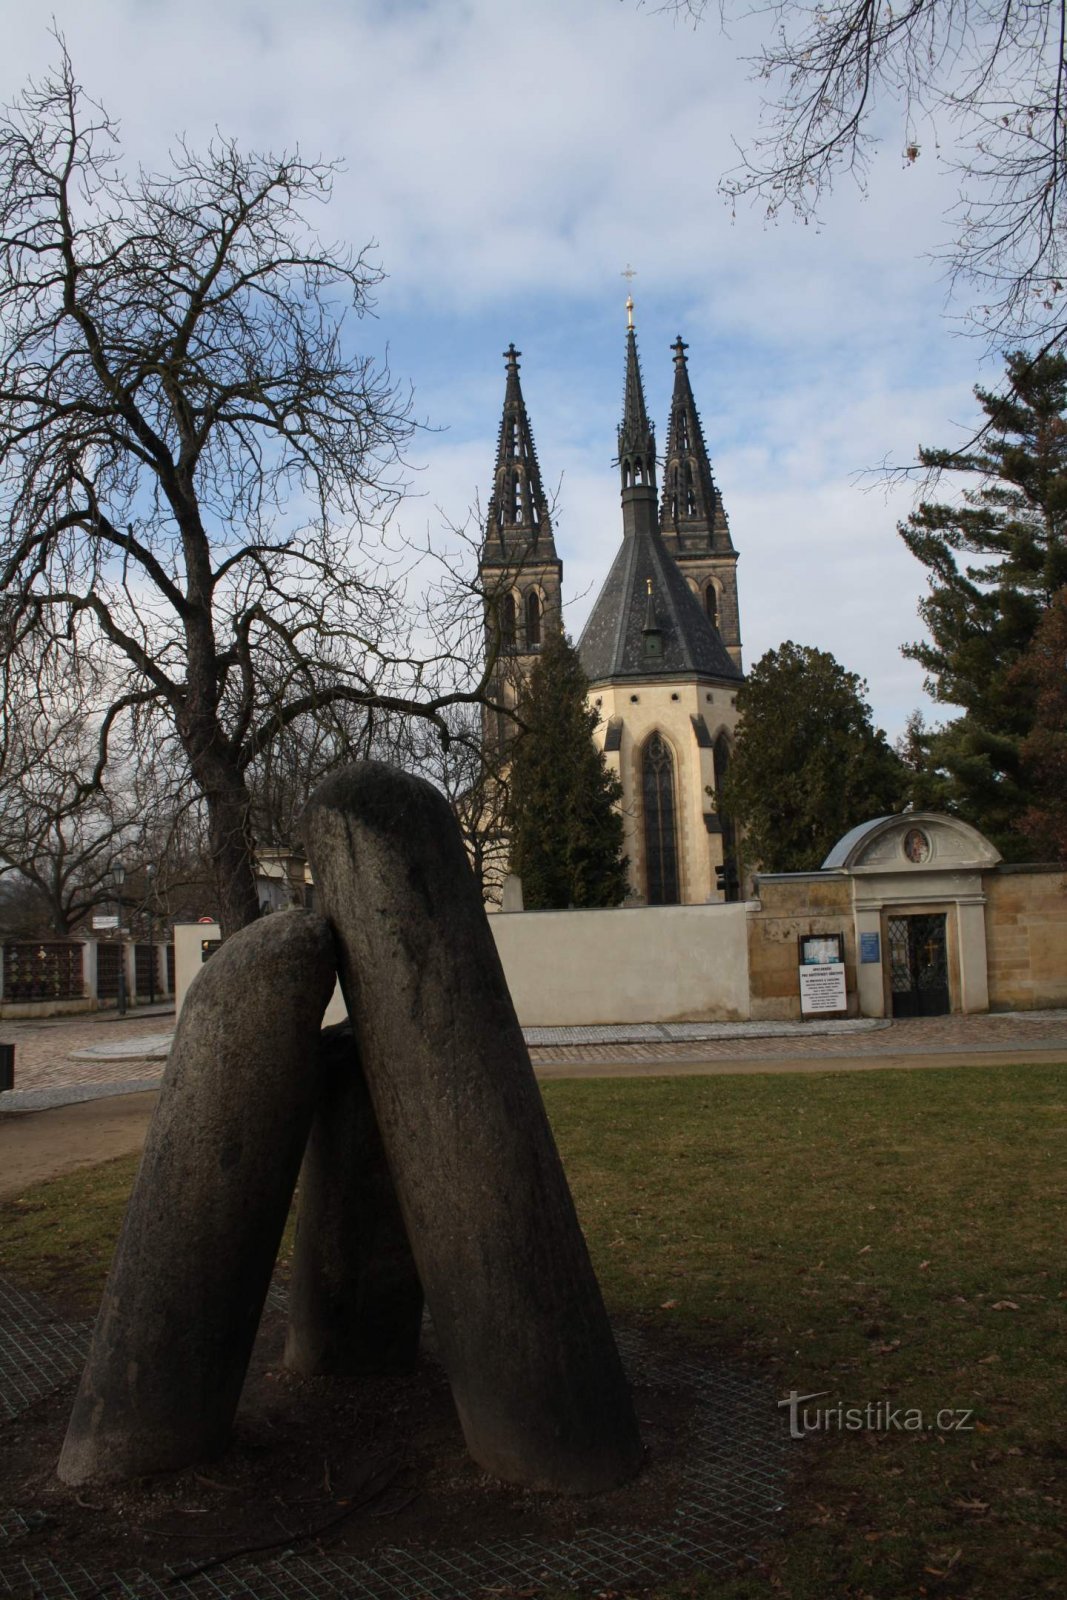 Praga – Vyšehrad in Hudičev steber